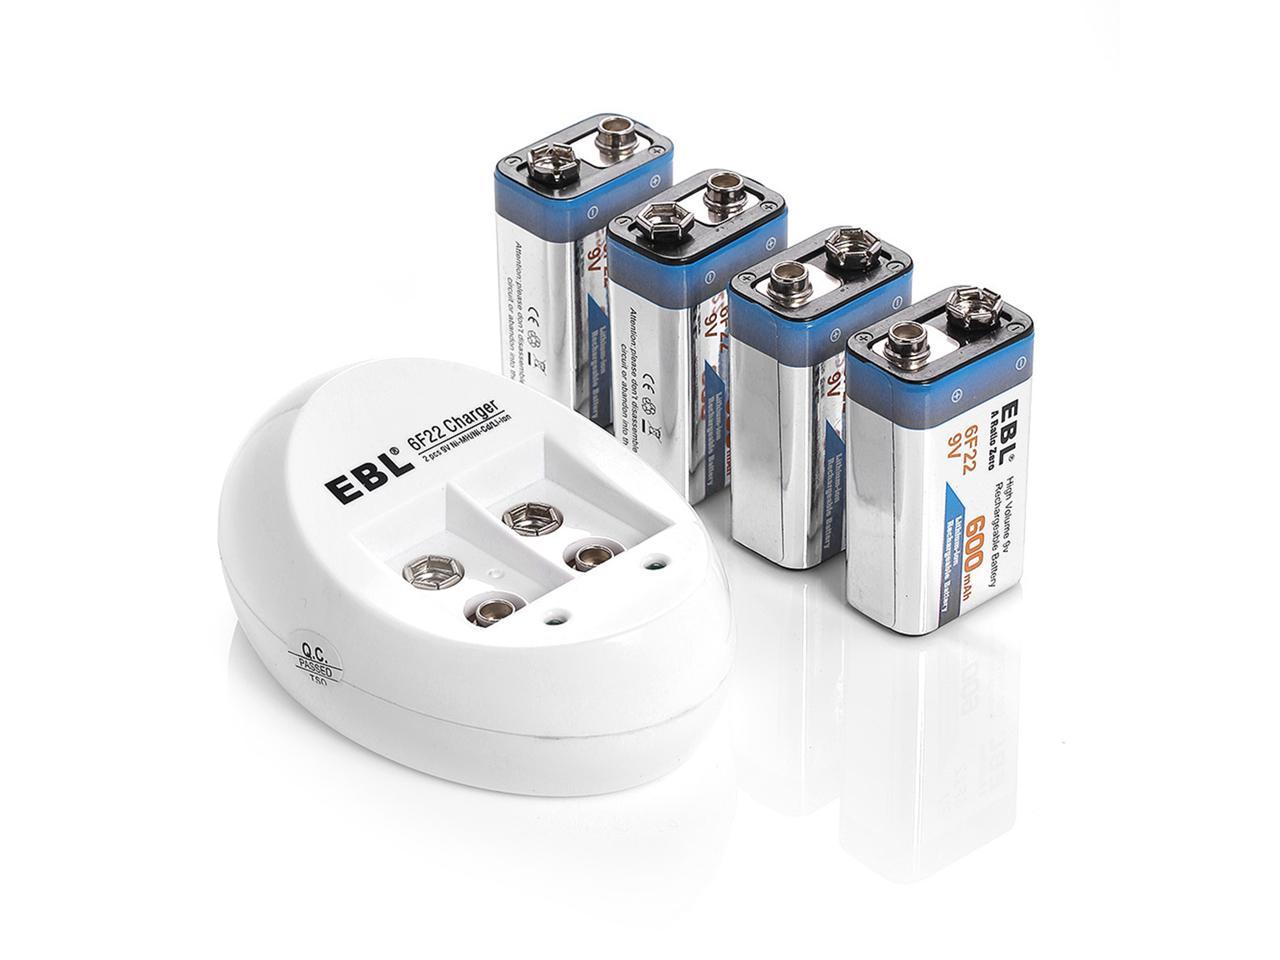 EBL LCD Chargeur de Piles 9V Rechargeables，Rapide Chargeur pour 9V 6F22 Li-ION Ni-MH Ni-CD Batteries，avec Port USB 